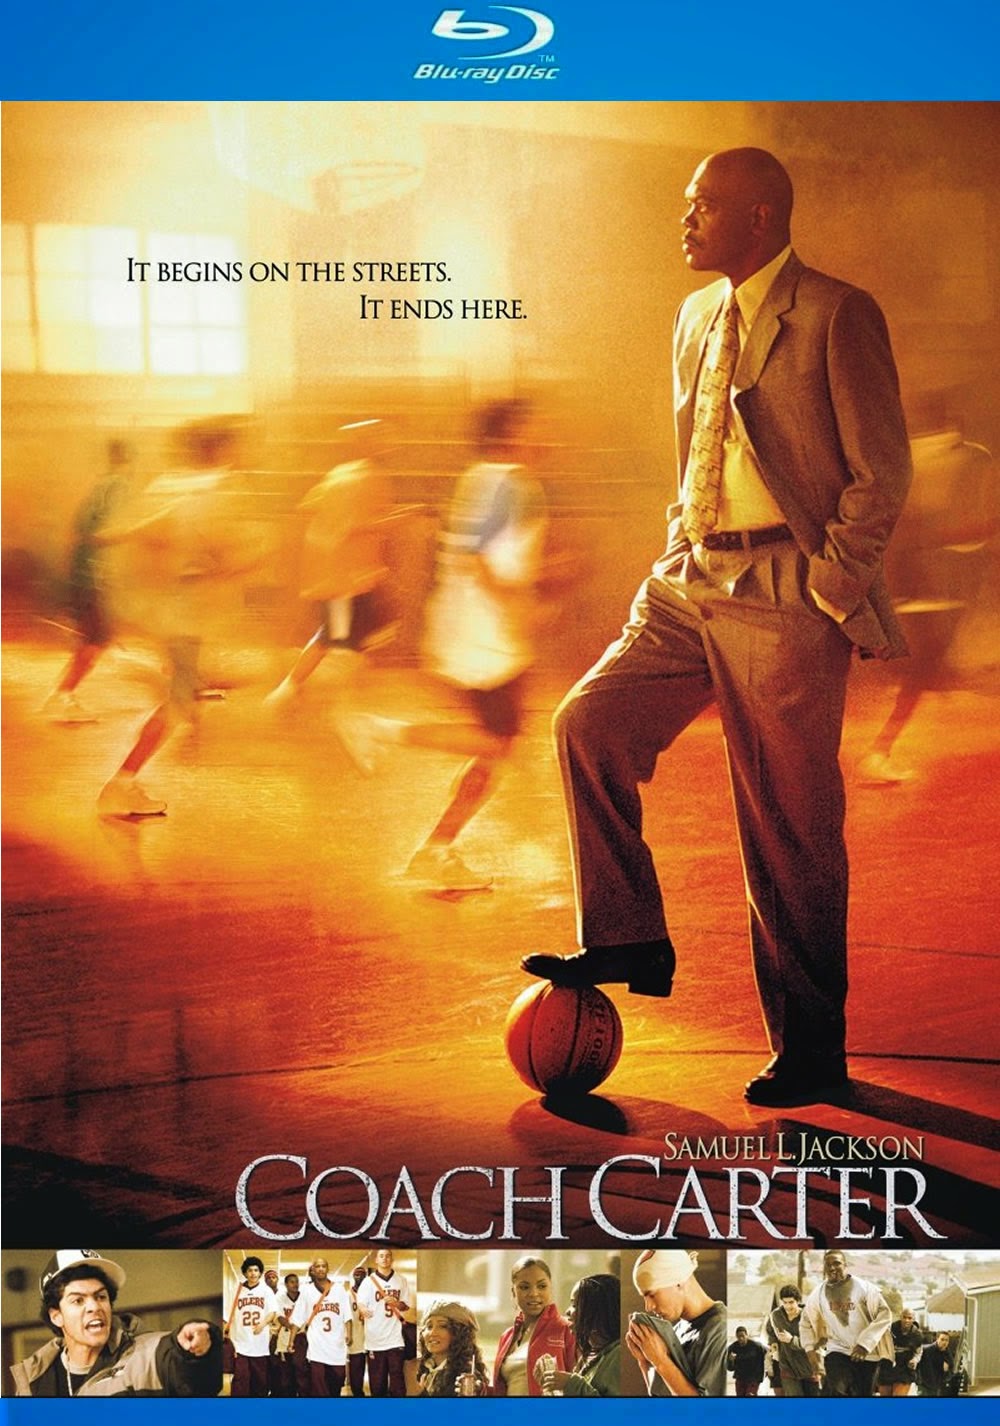 Coach Carter – Treino Para a Vida [ 2005 ] Bluray 720p Dublado Assistir e Baixar